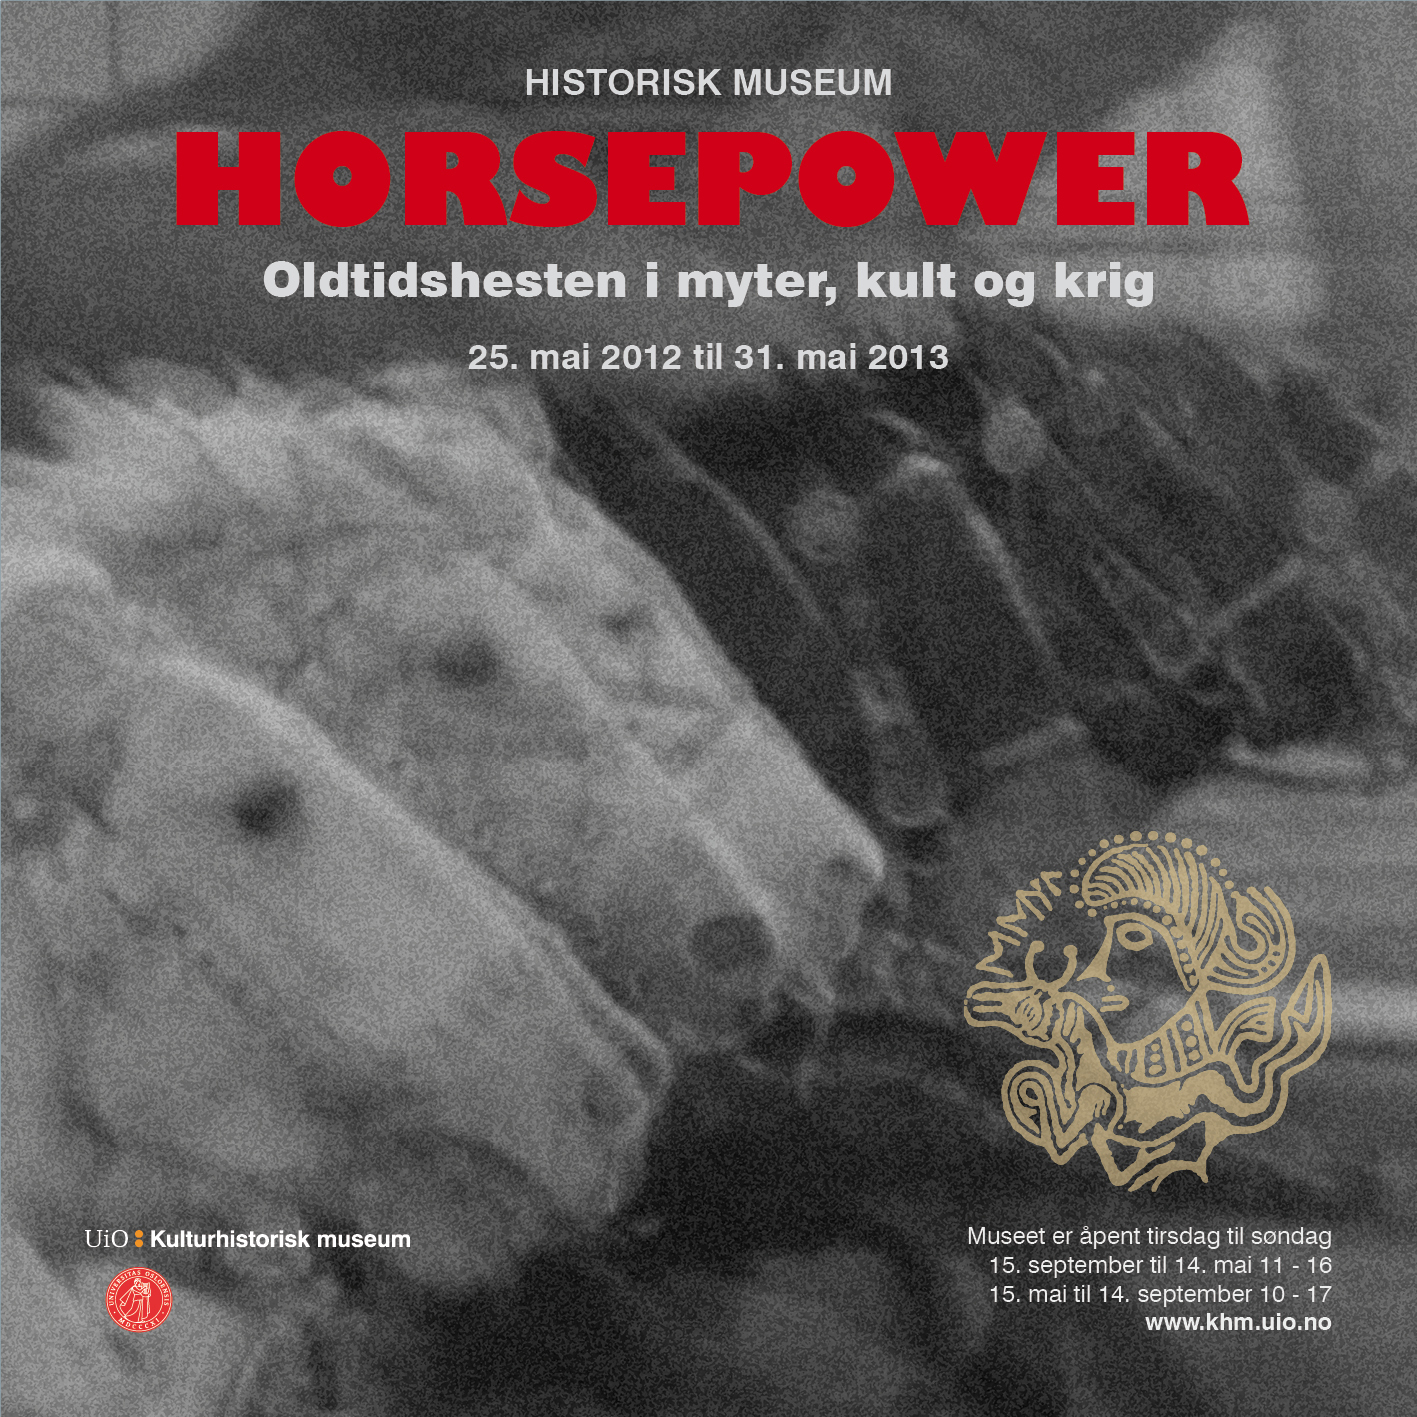 Plakat med nærbilde av hestehoder. Øverst står teksten "Horsepower" i rødt.